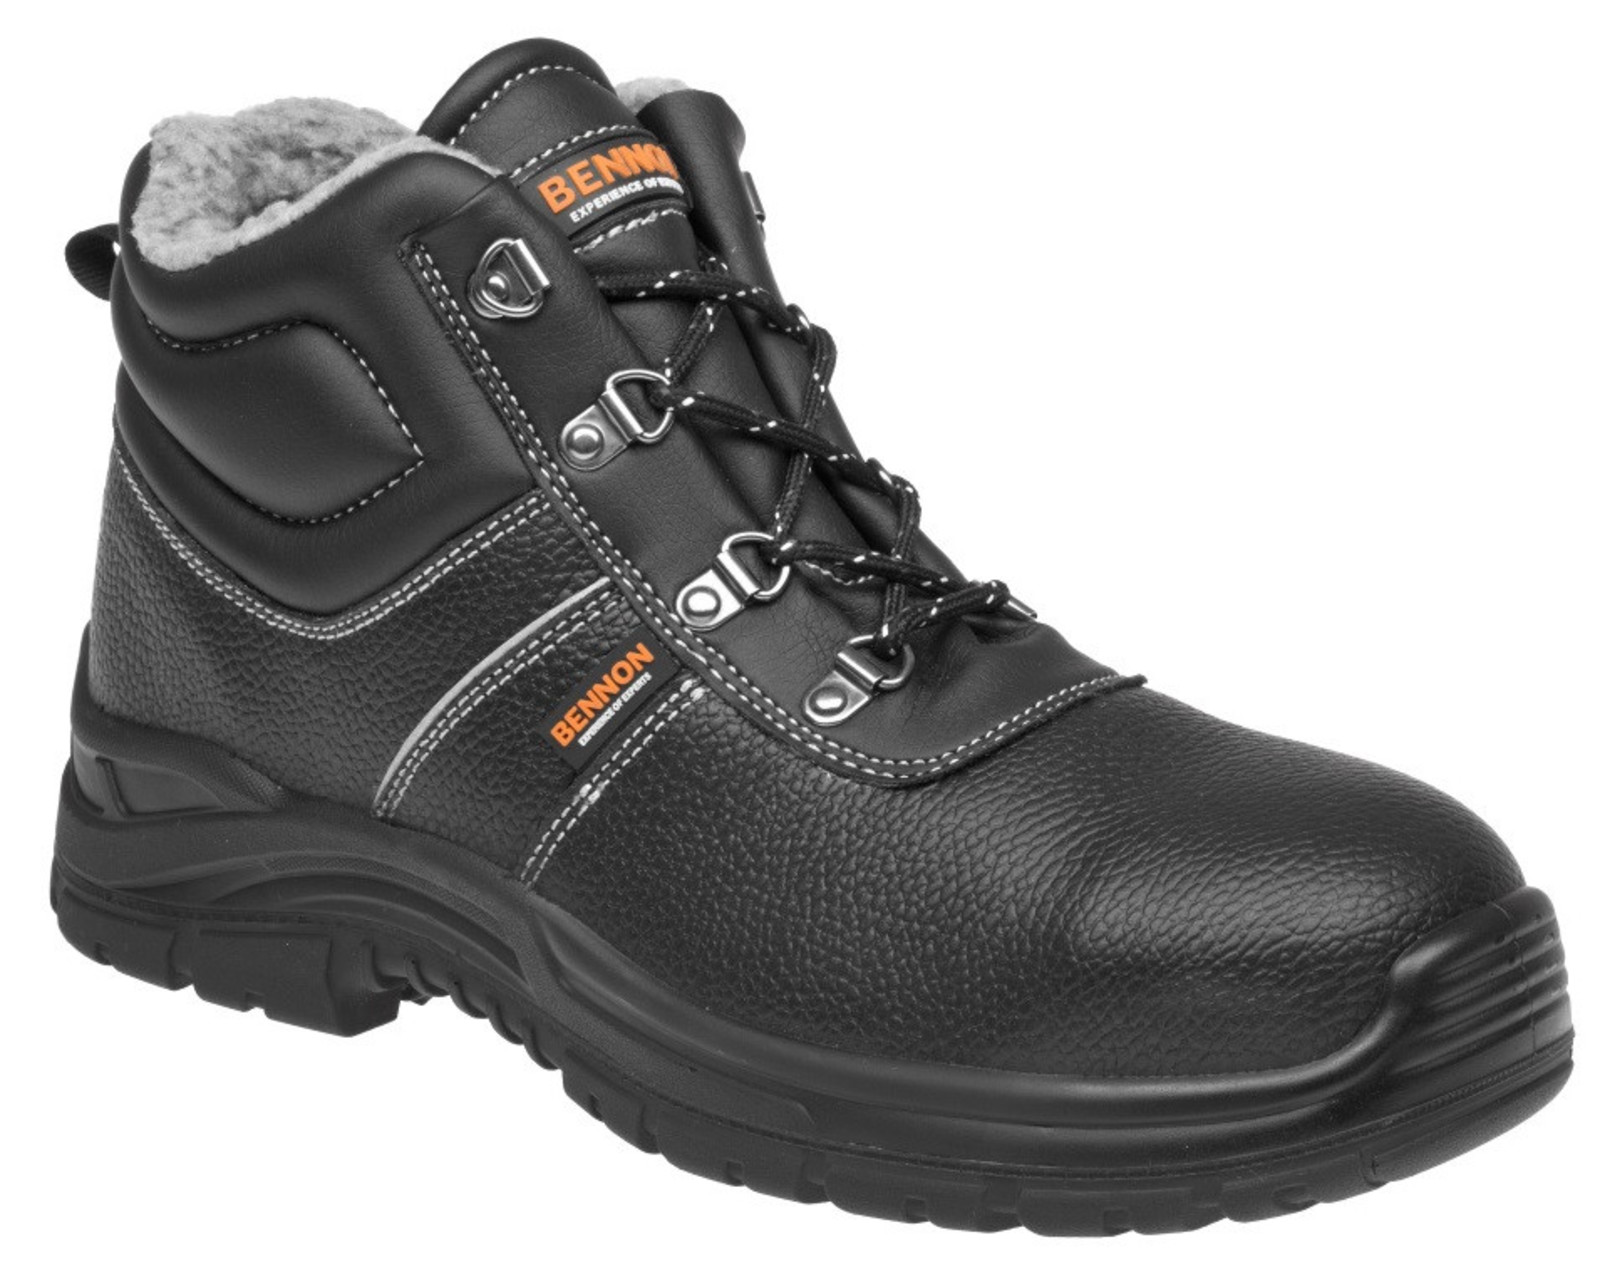 Zimná bezpečnostná obuv Bennon Basic S3 - veľkosť: 45, farba: čierna